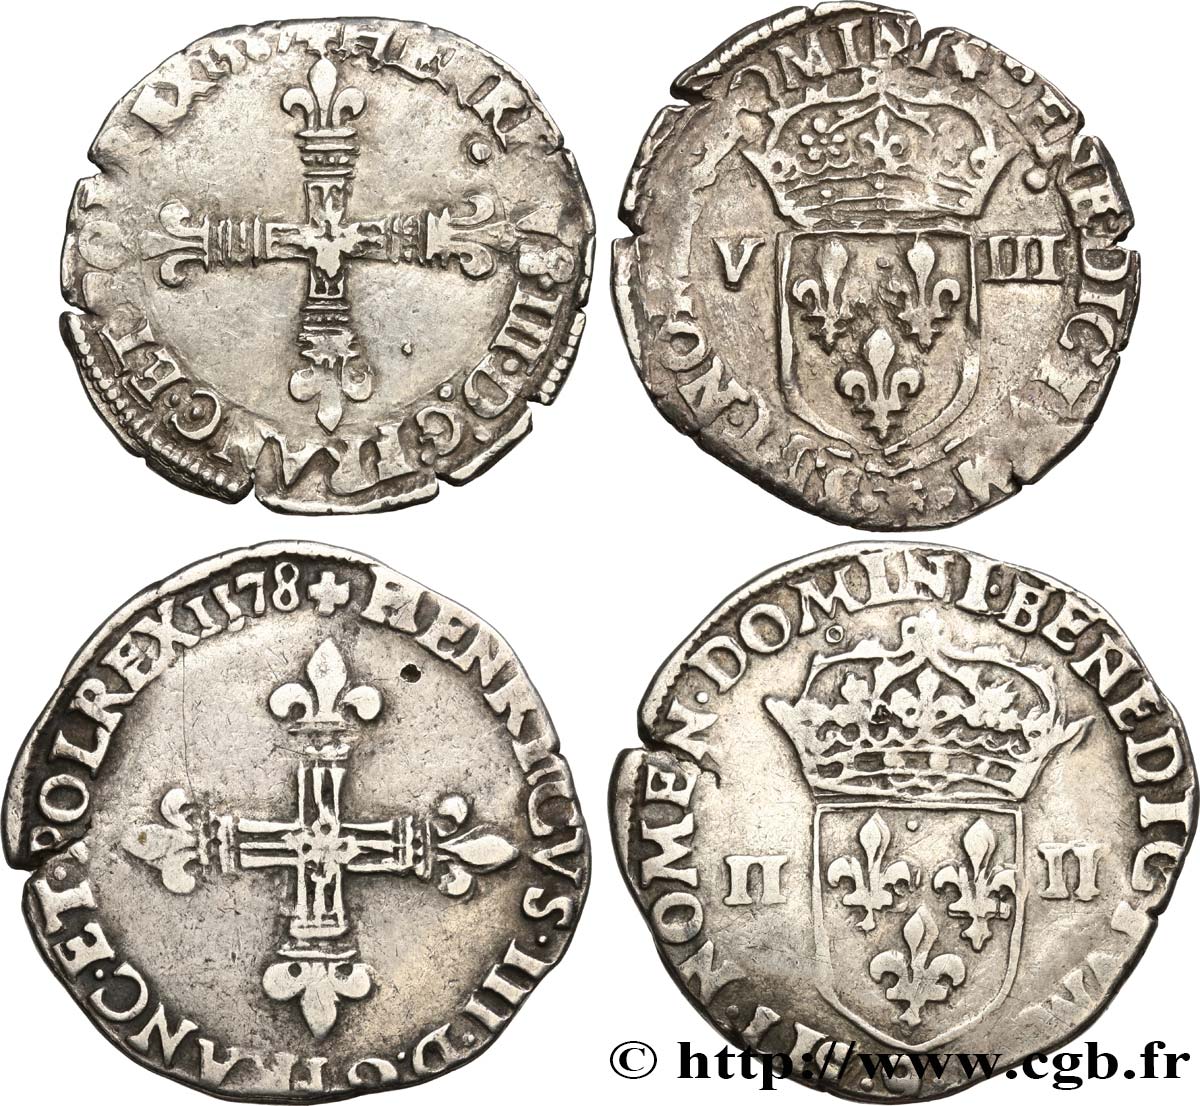 HENRY III Lot de 2 monnaies royales n.d. Ateliers divers S